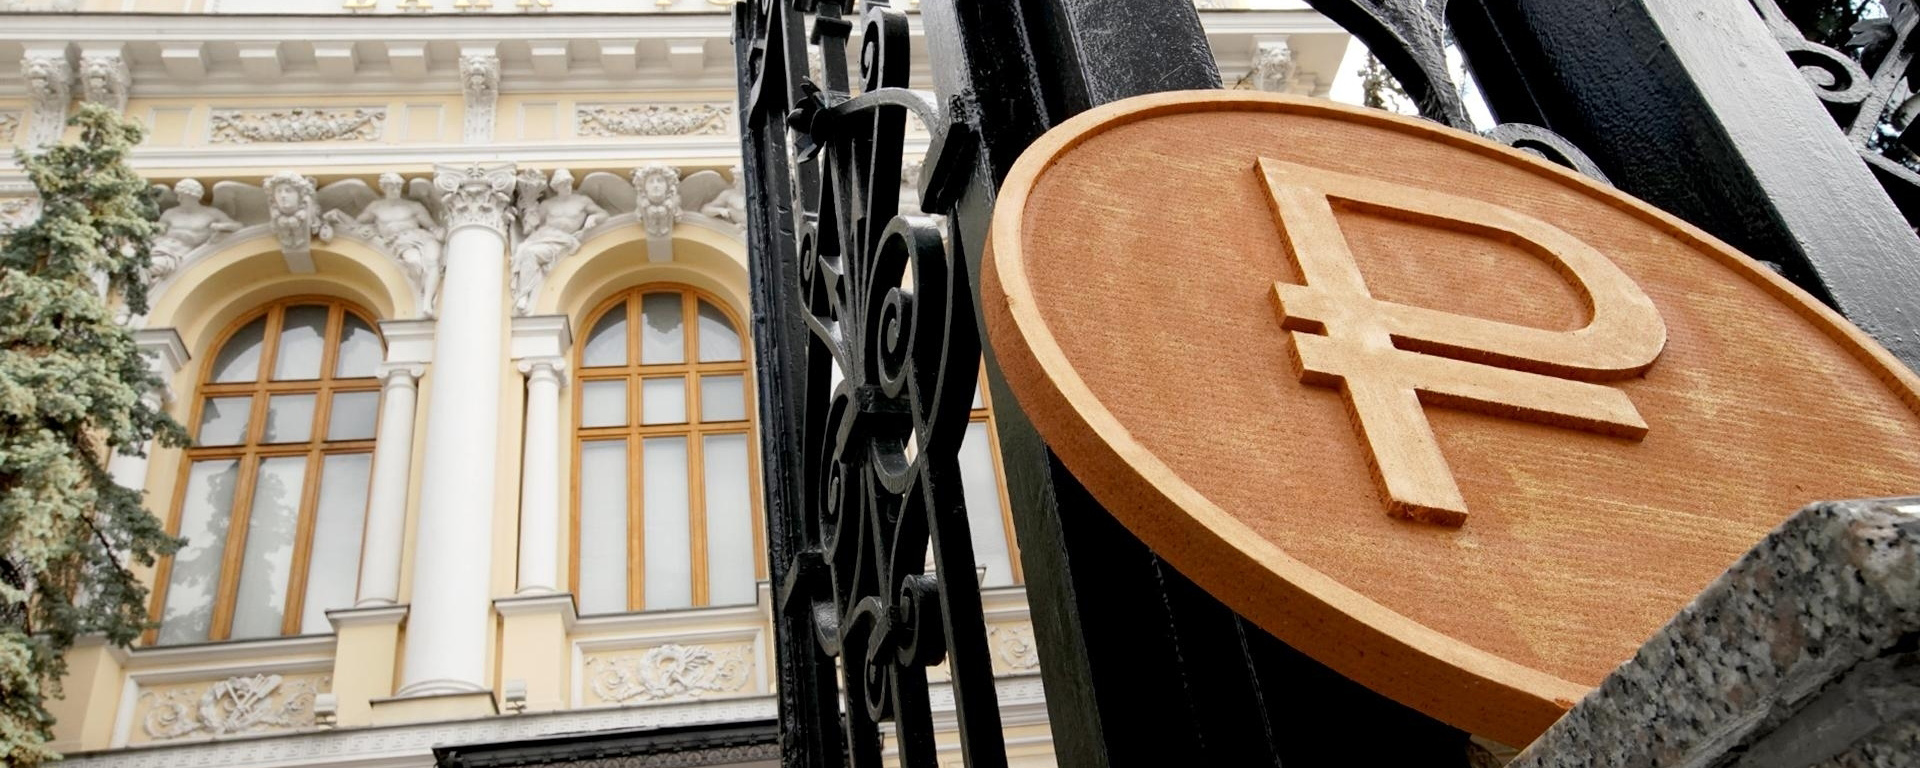 Уровень доверия россиян к банкам достиг рекордных 82%